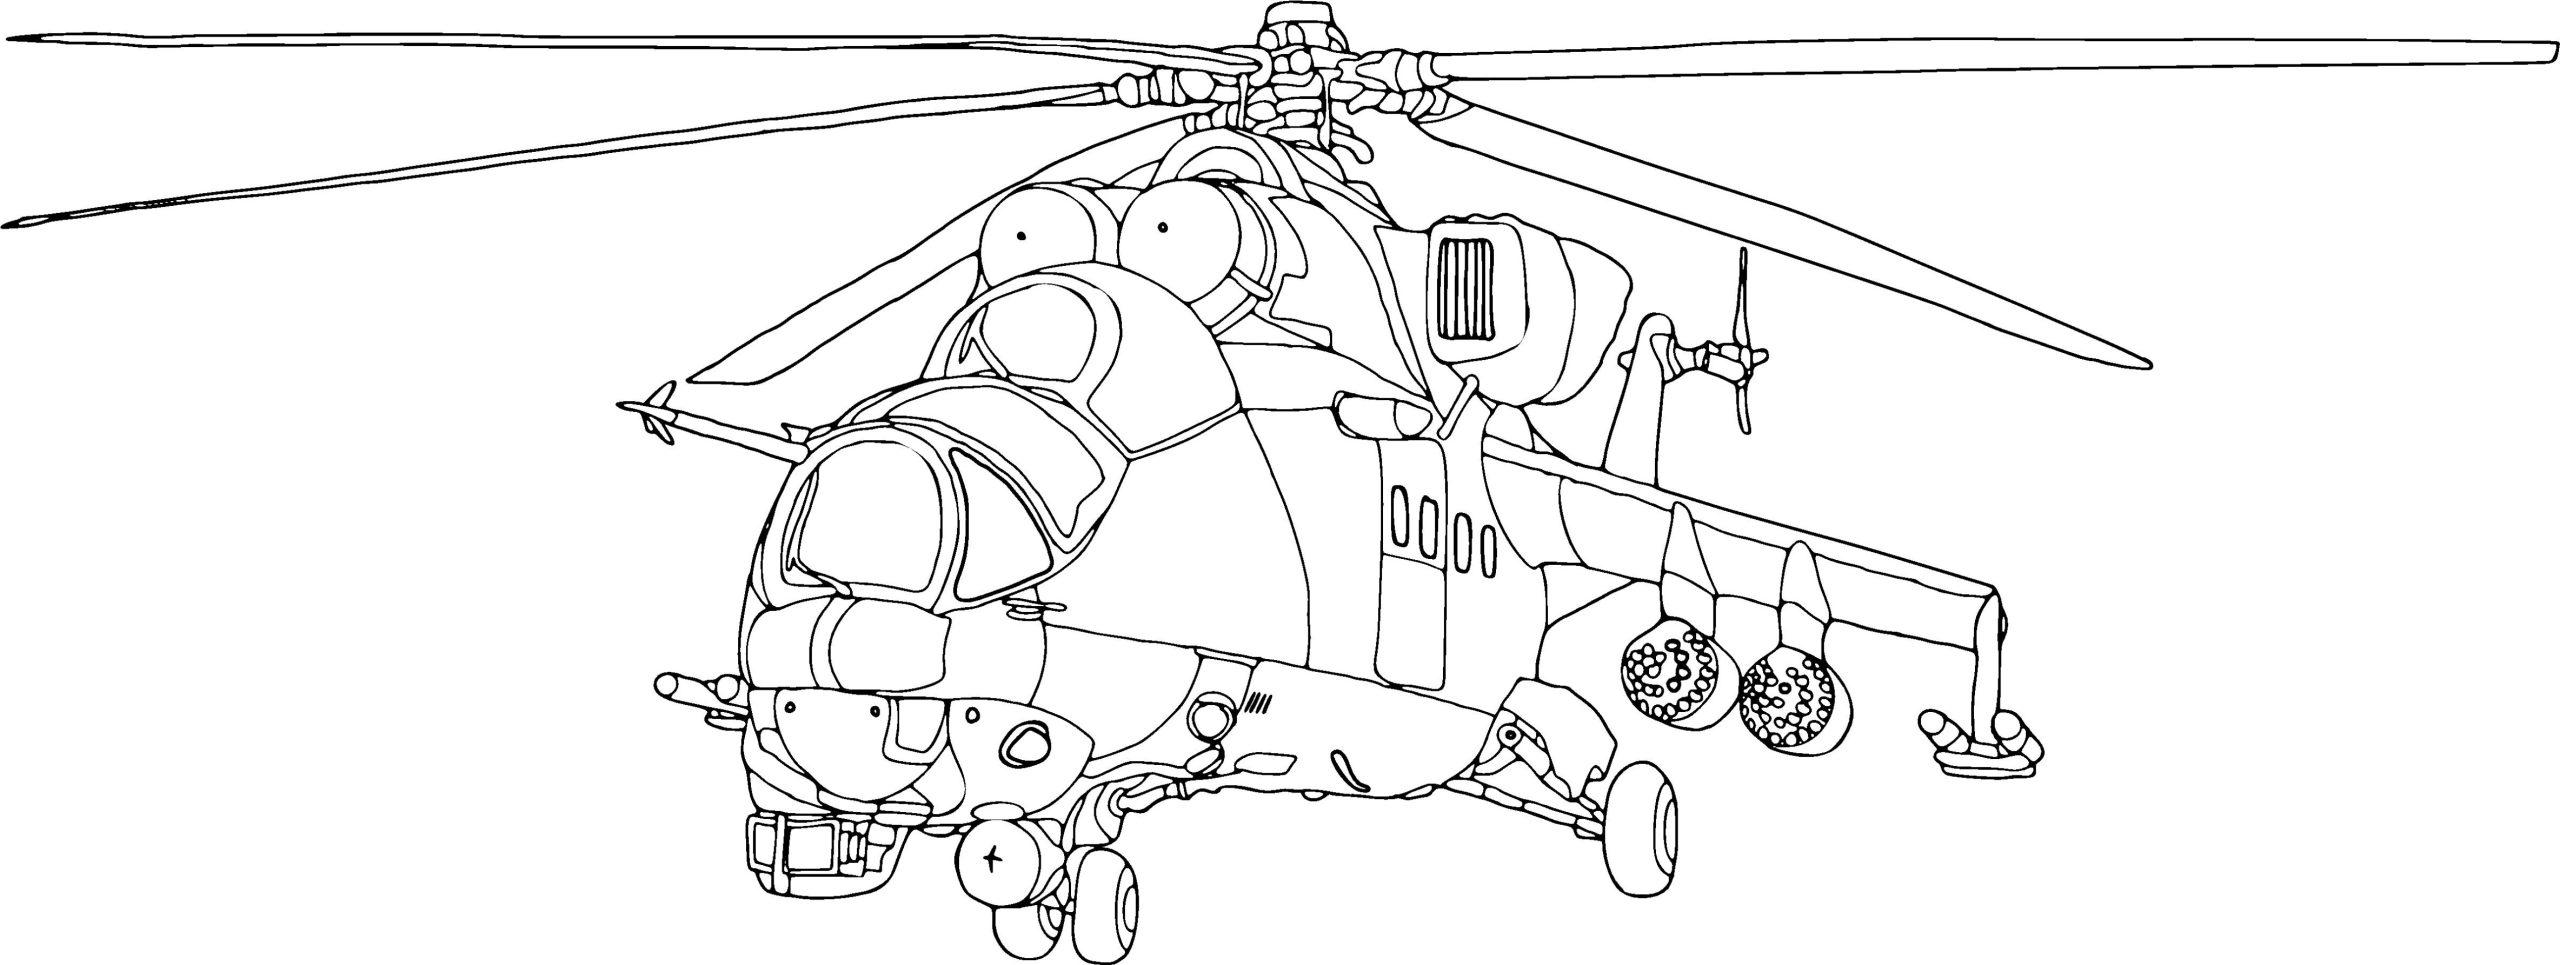 Gevechtshelikopter Kleurplaat